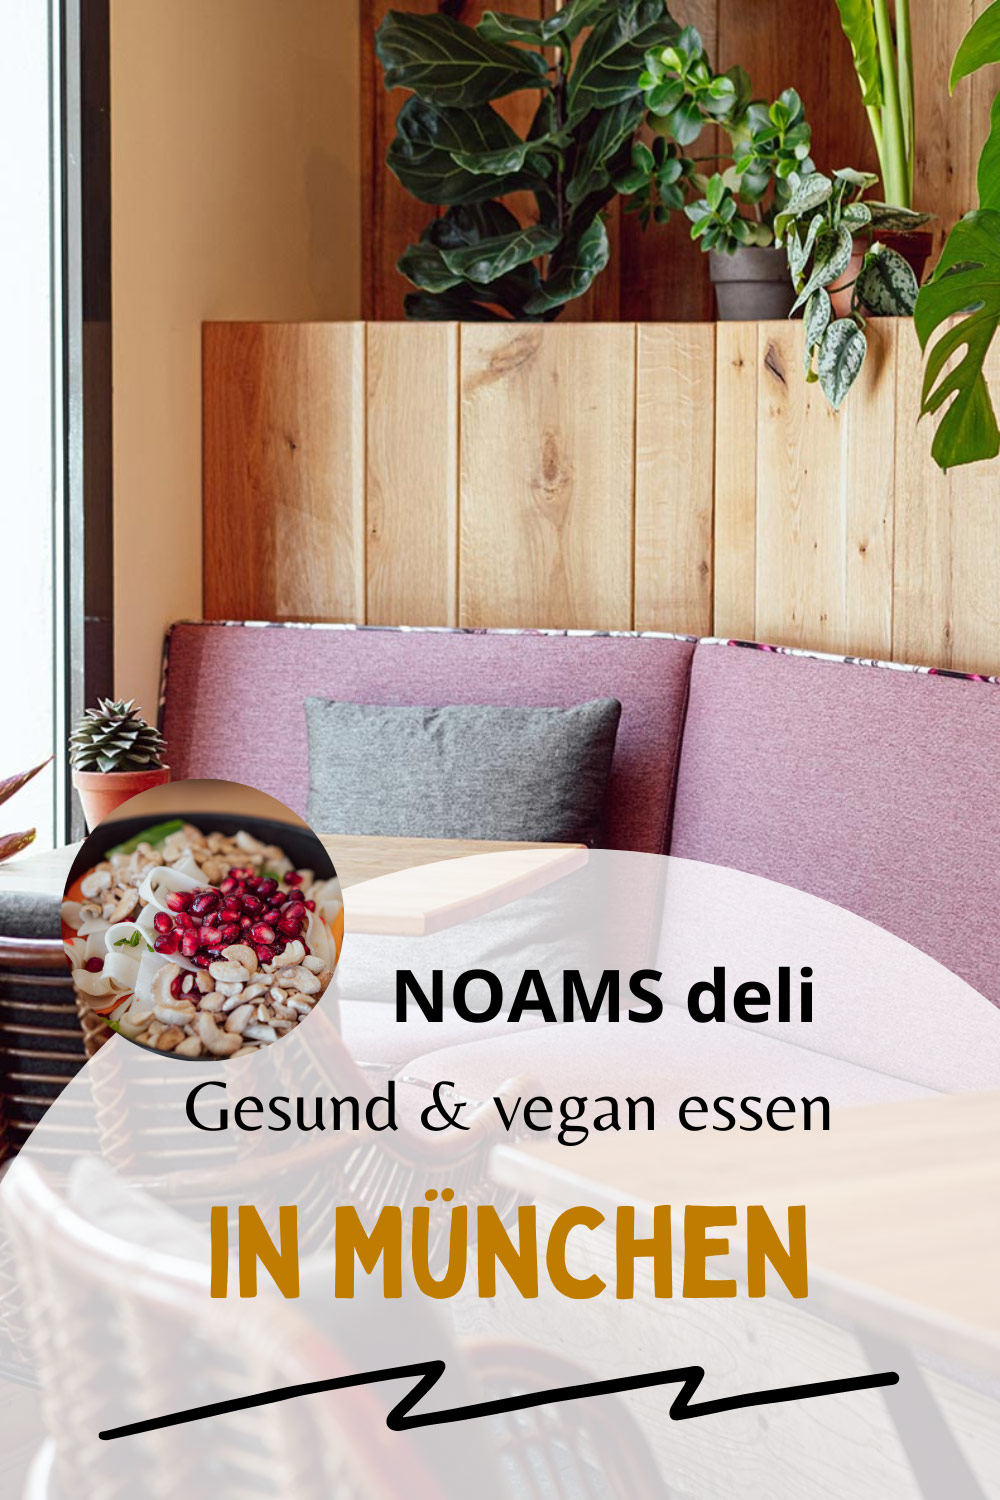 NOAMS deli München: Vegetarisches Restaurant mit gesunden Gerichten